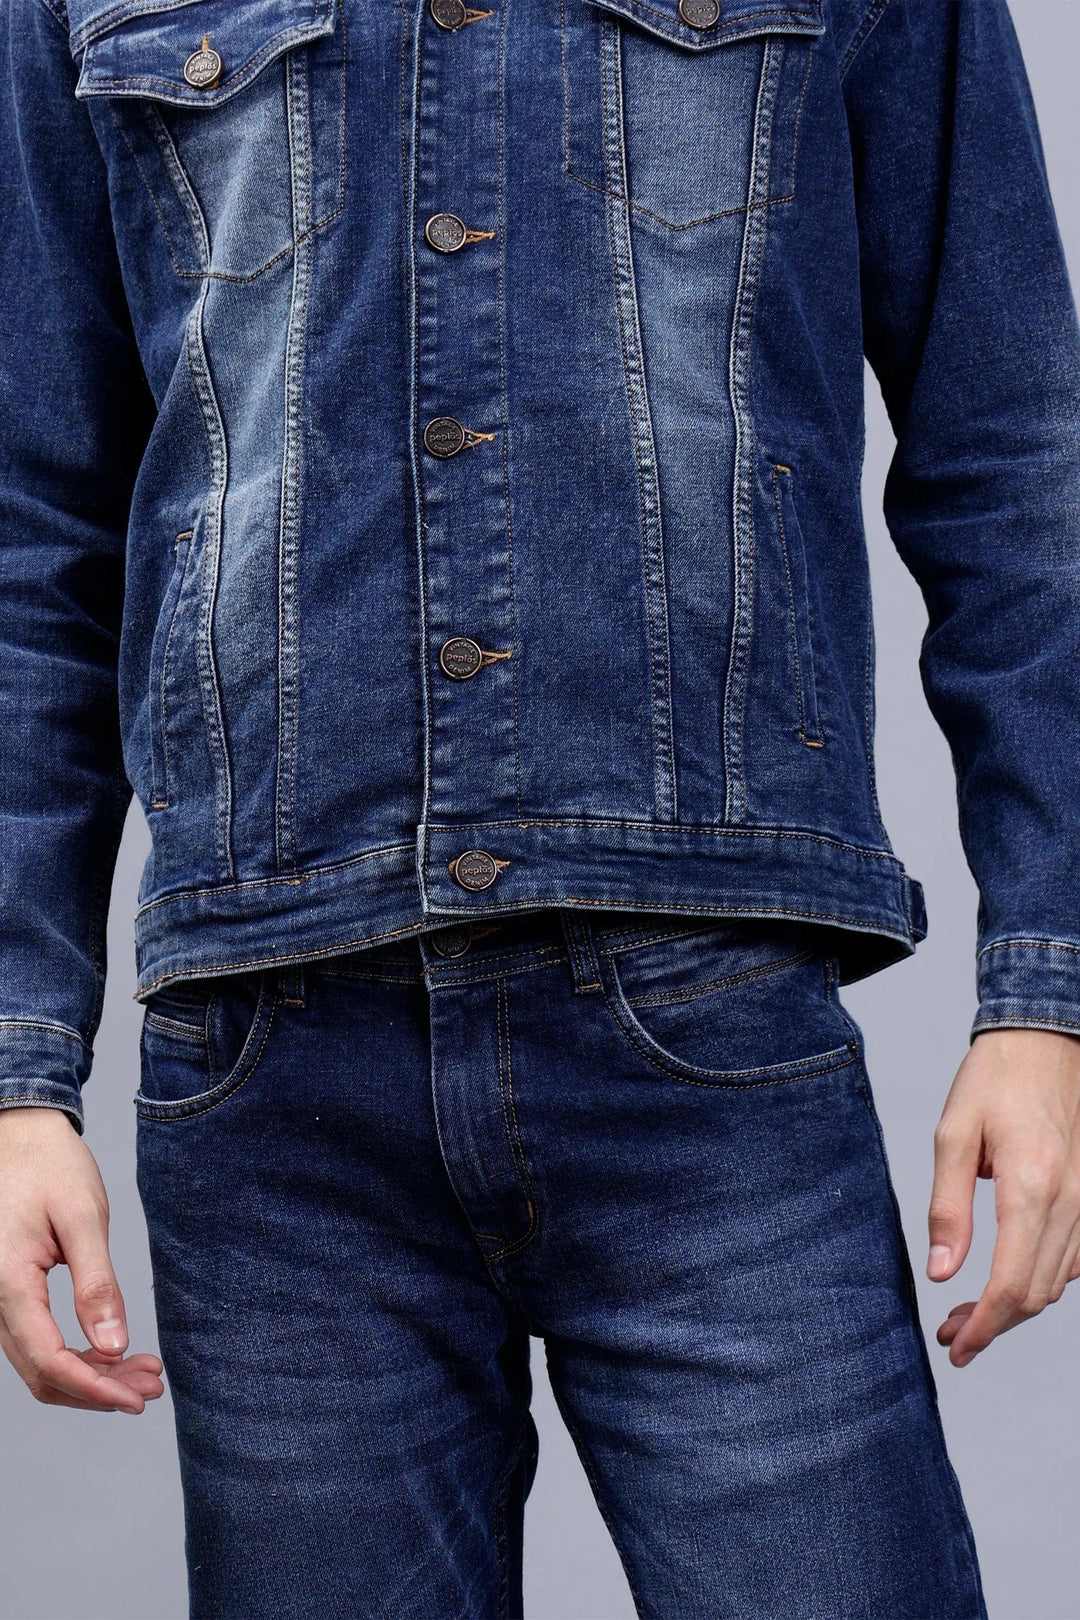 Regular Fit Blue Denim Cargo & Jacket Co-ord Set for Men - Peplos Jeans 